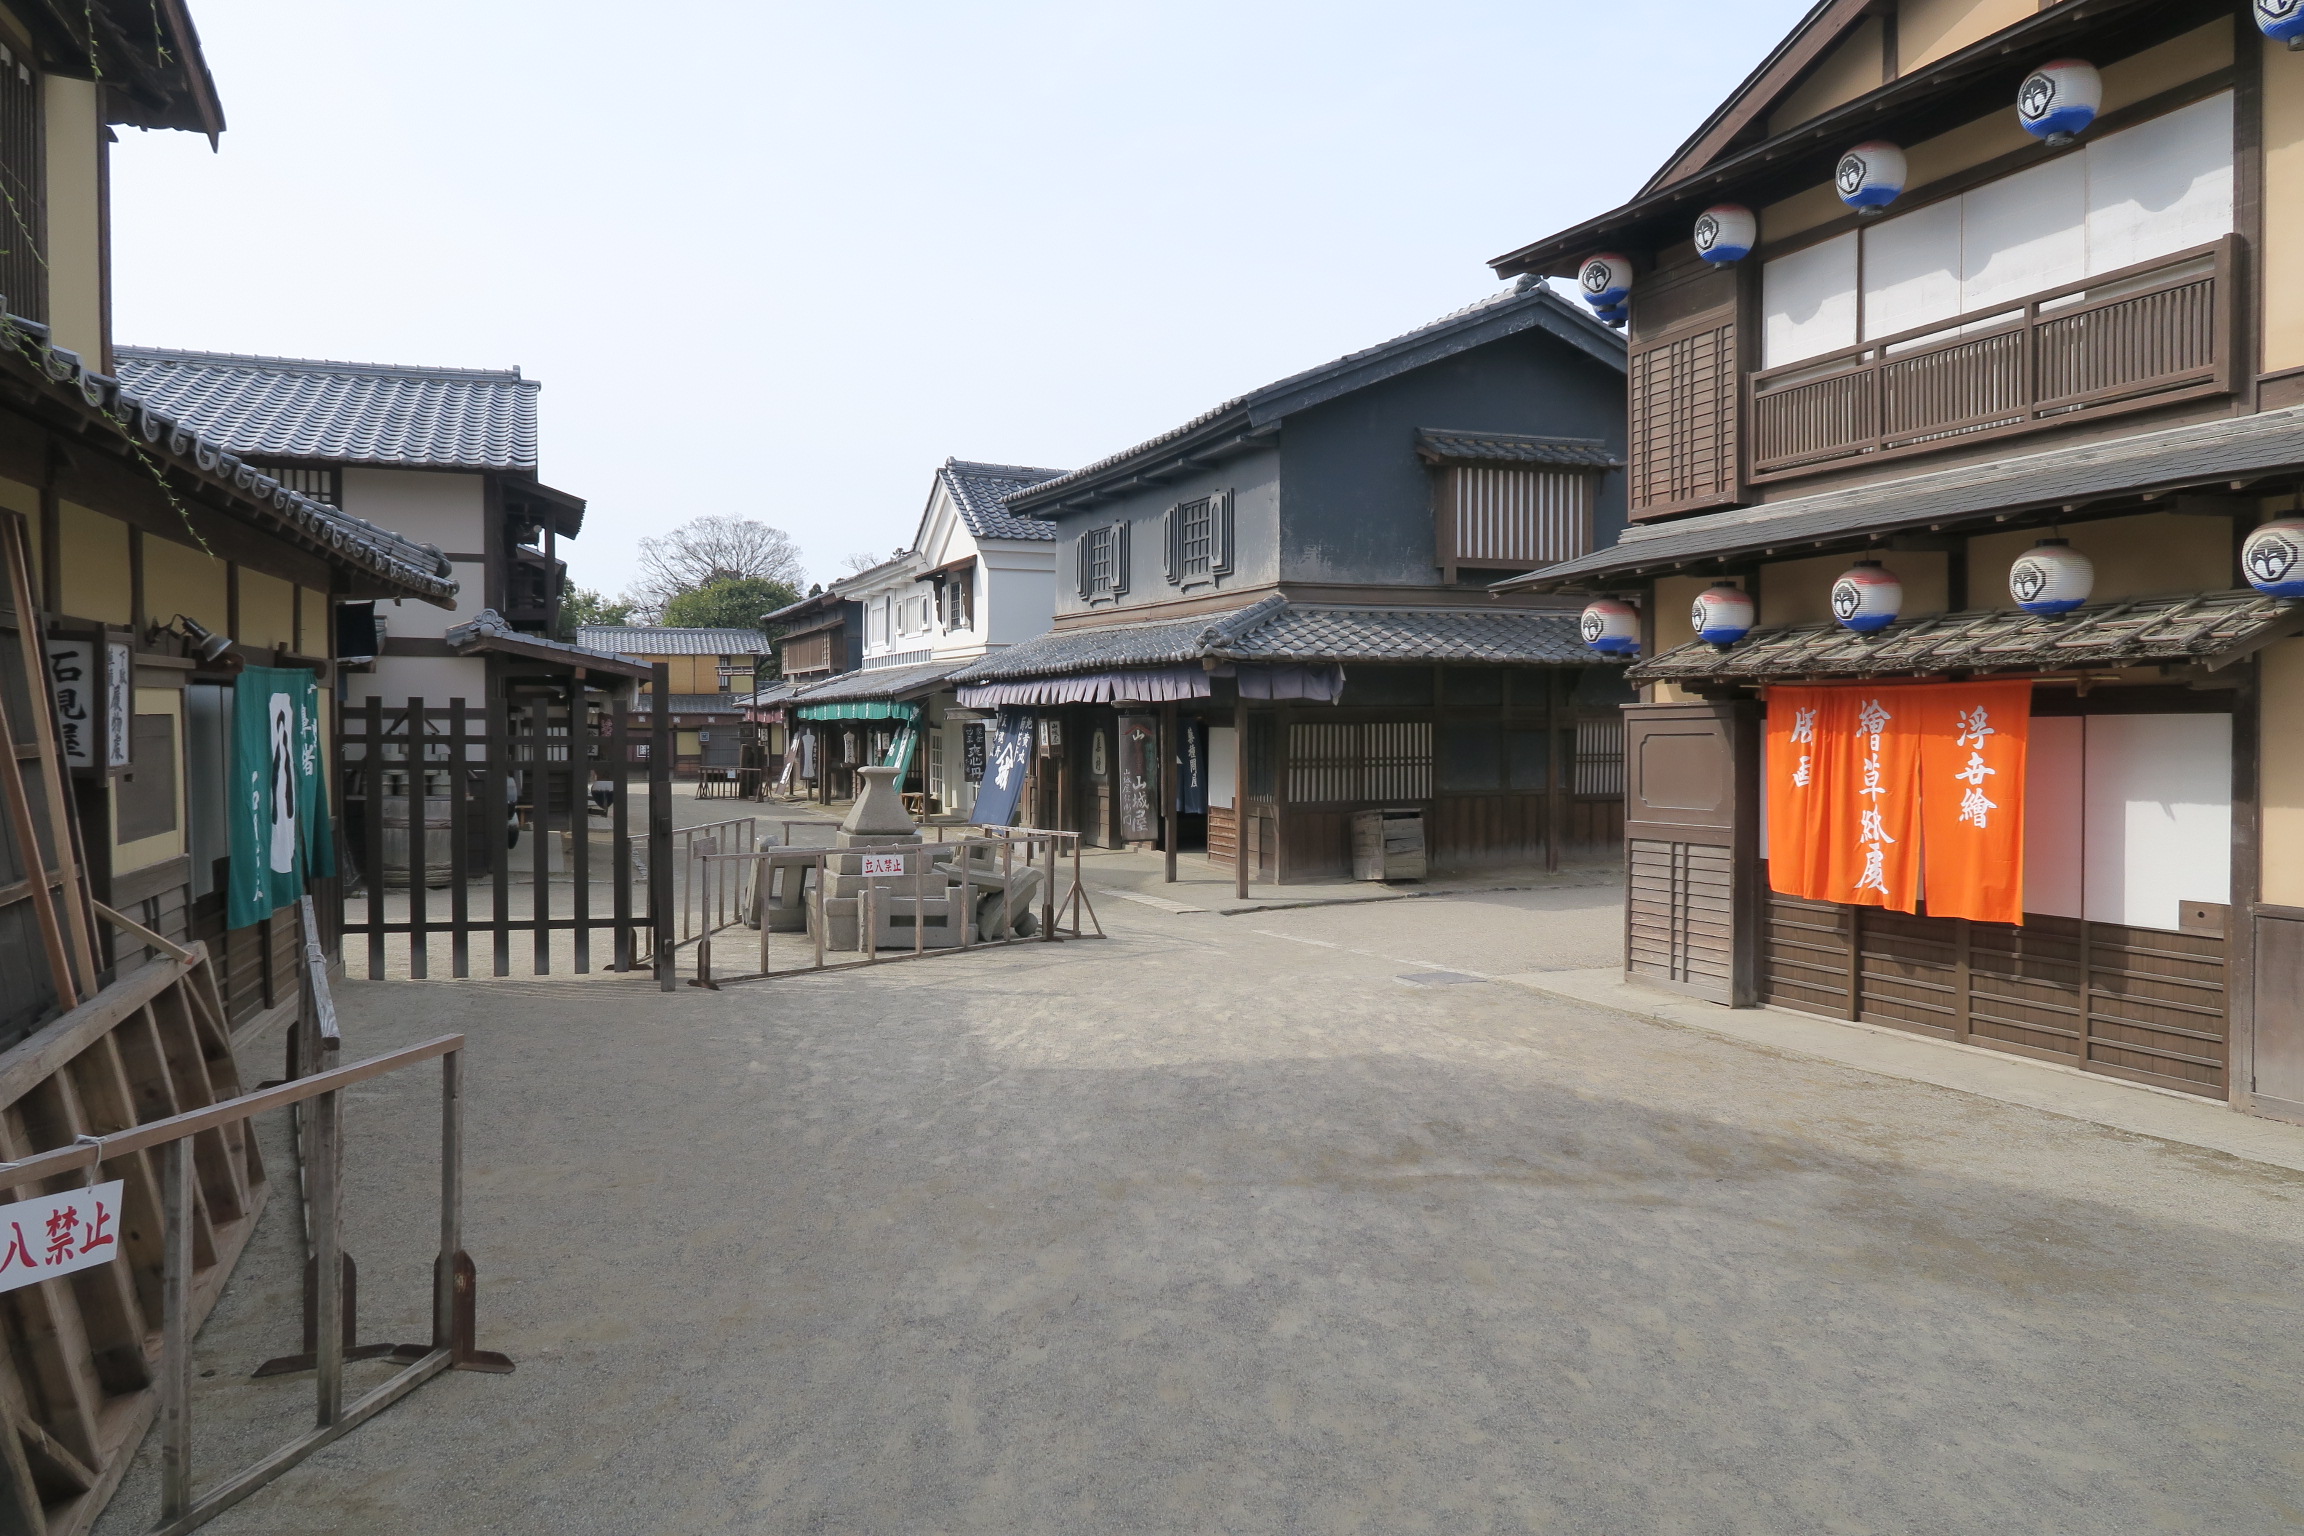 再現された江戸の町並み。実際に時代劇の撮影も行われる場所で、運がよければ撮影風景も見れます！